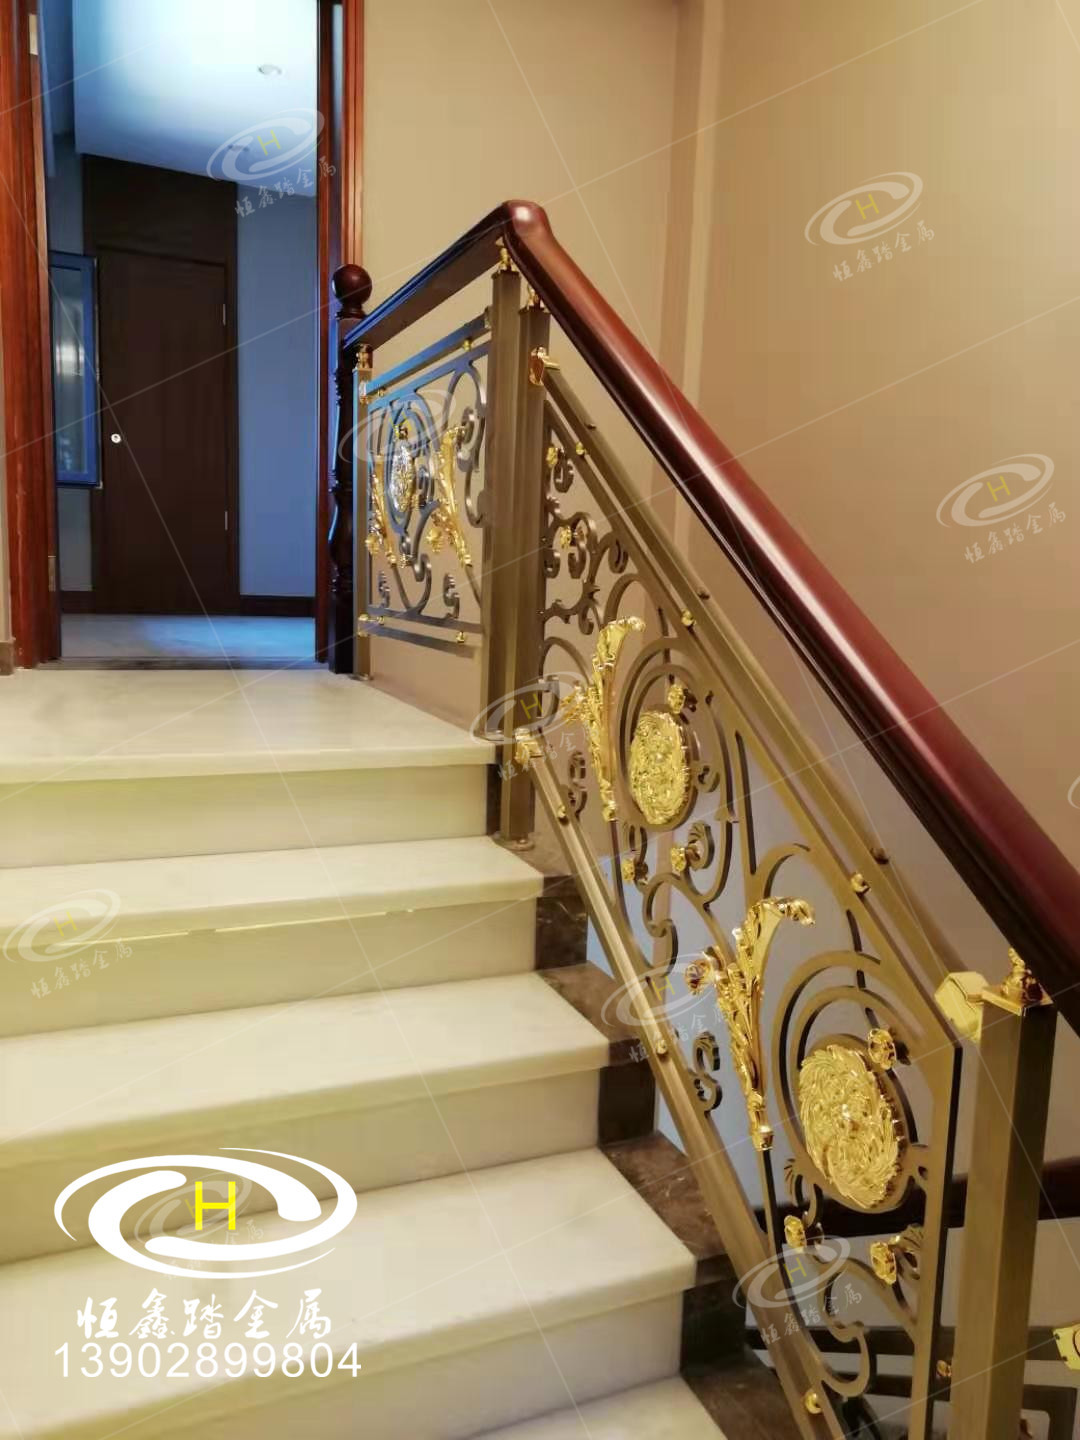 酒店旋转护栏 楼梯护栏生产厂家 广东佛山专业楼梯护栏安装测量一条龙服务